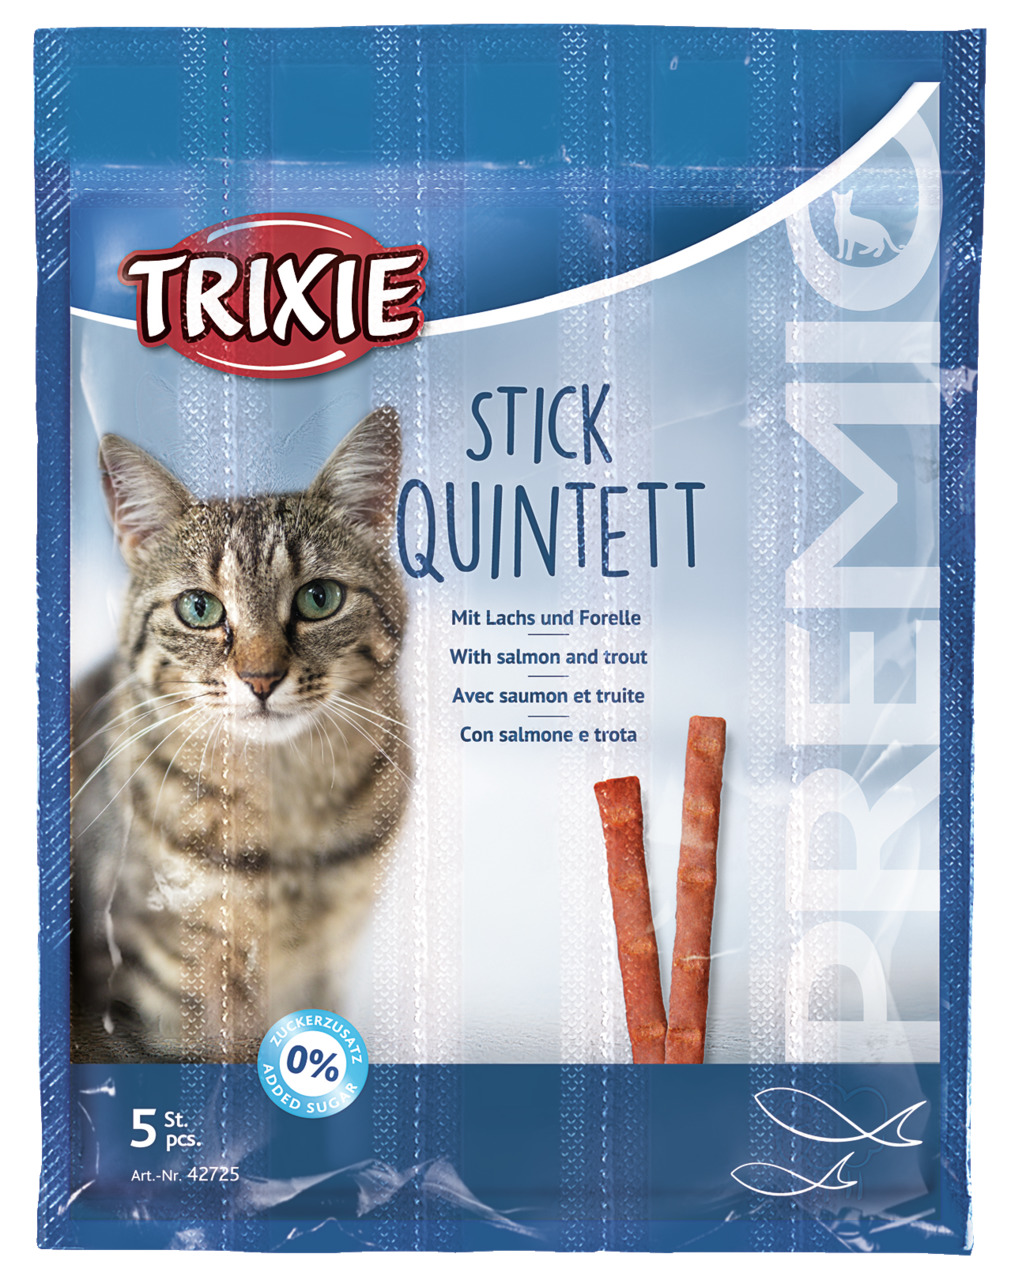 Trixie Premio Stick Quintett mit Lachs und Forelle Katzen Snack 5 g